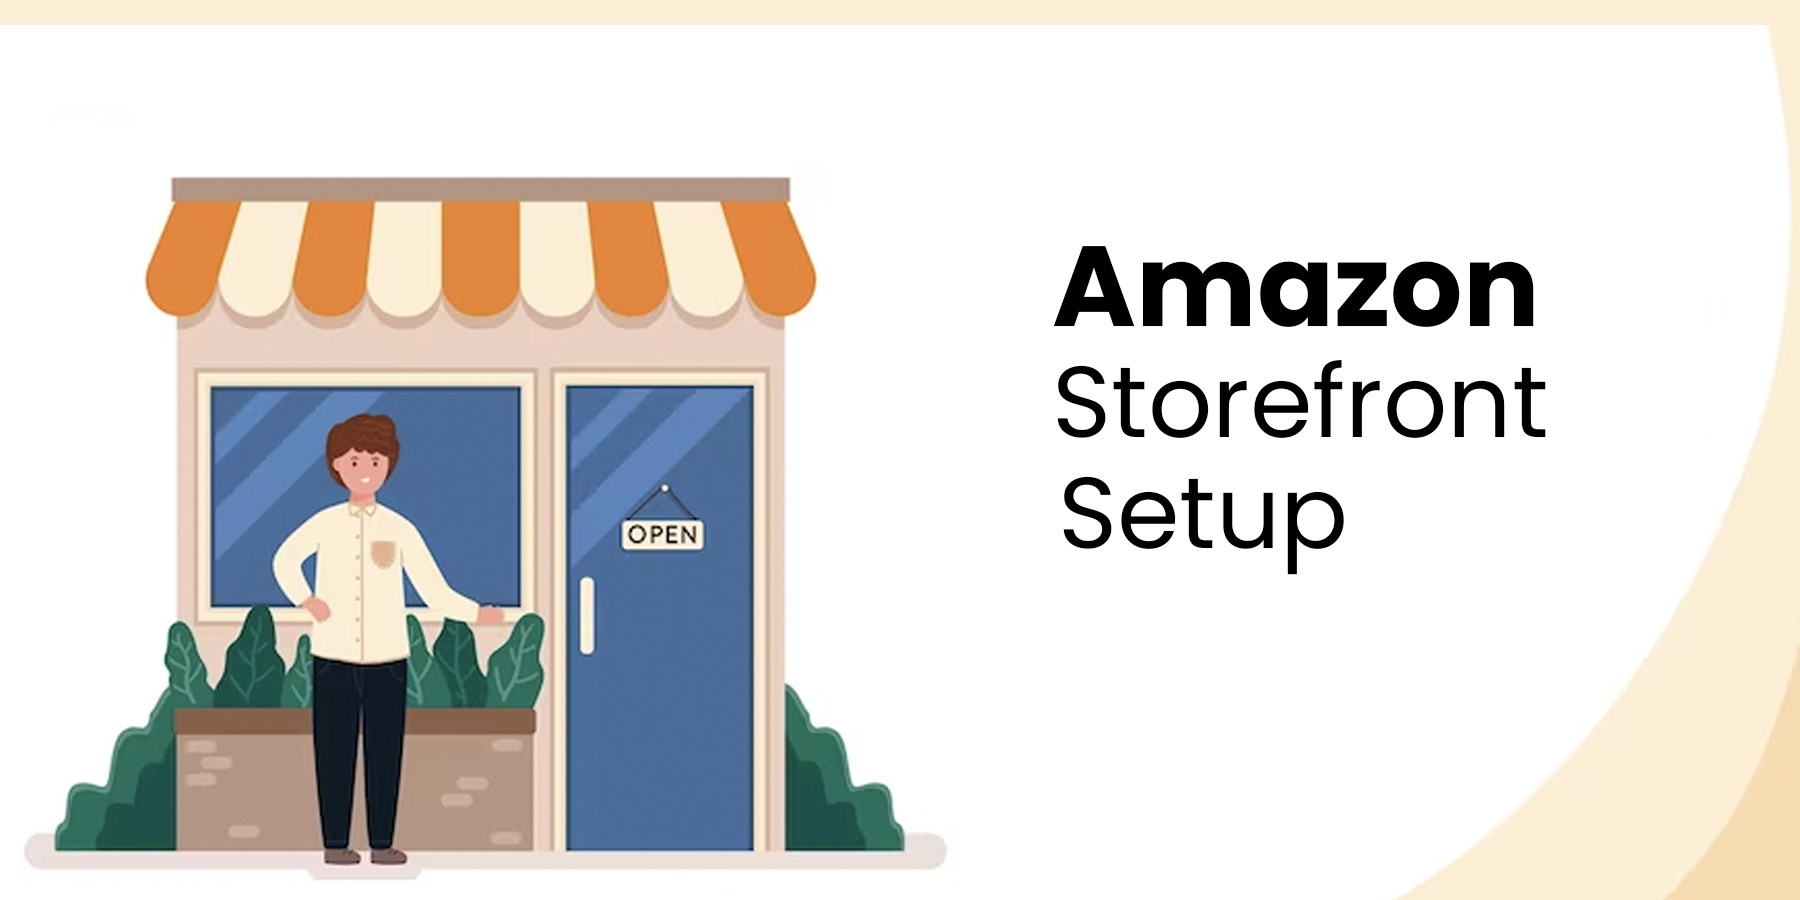 Amazon Storefront Setup